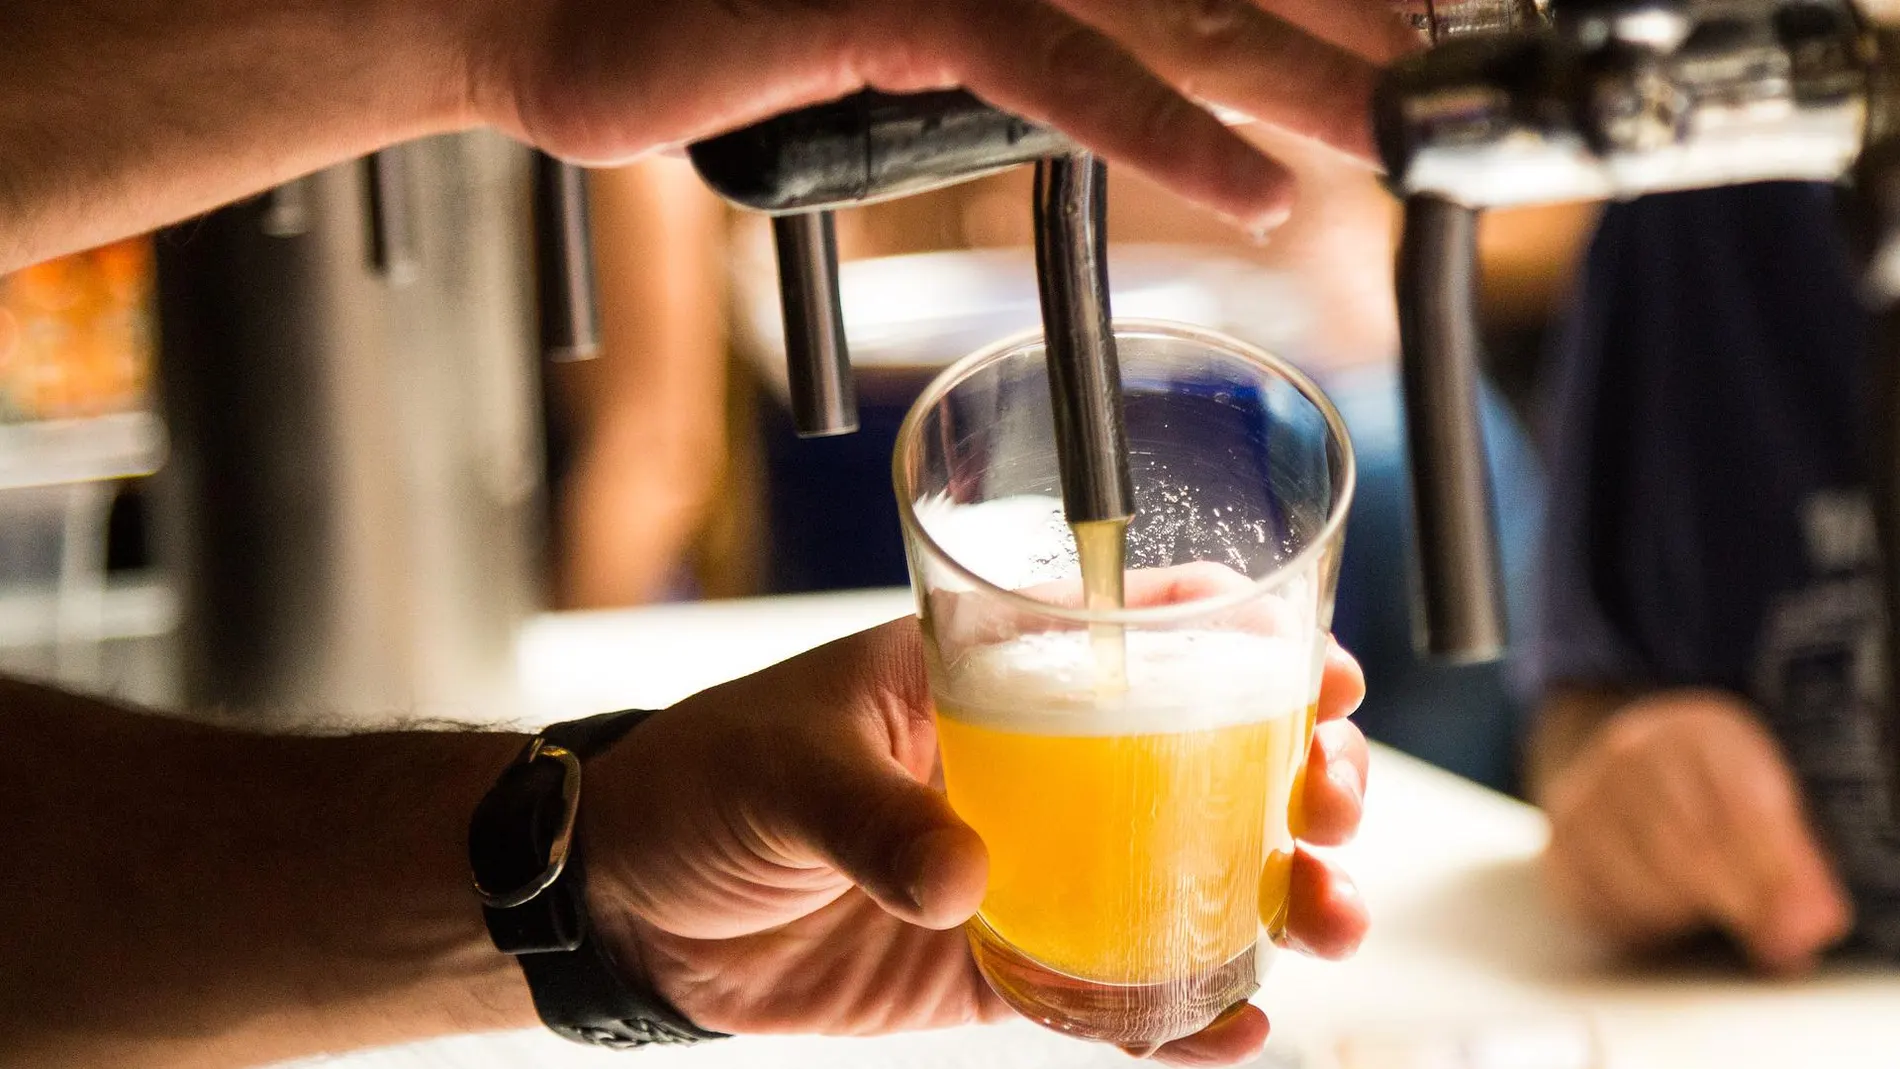 Foto de archivo de un vaso con cerveza en un bar